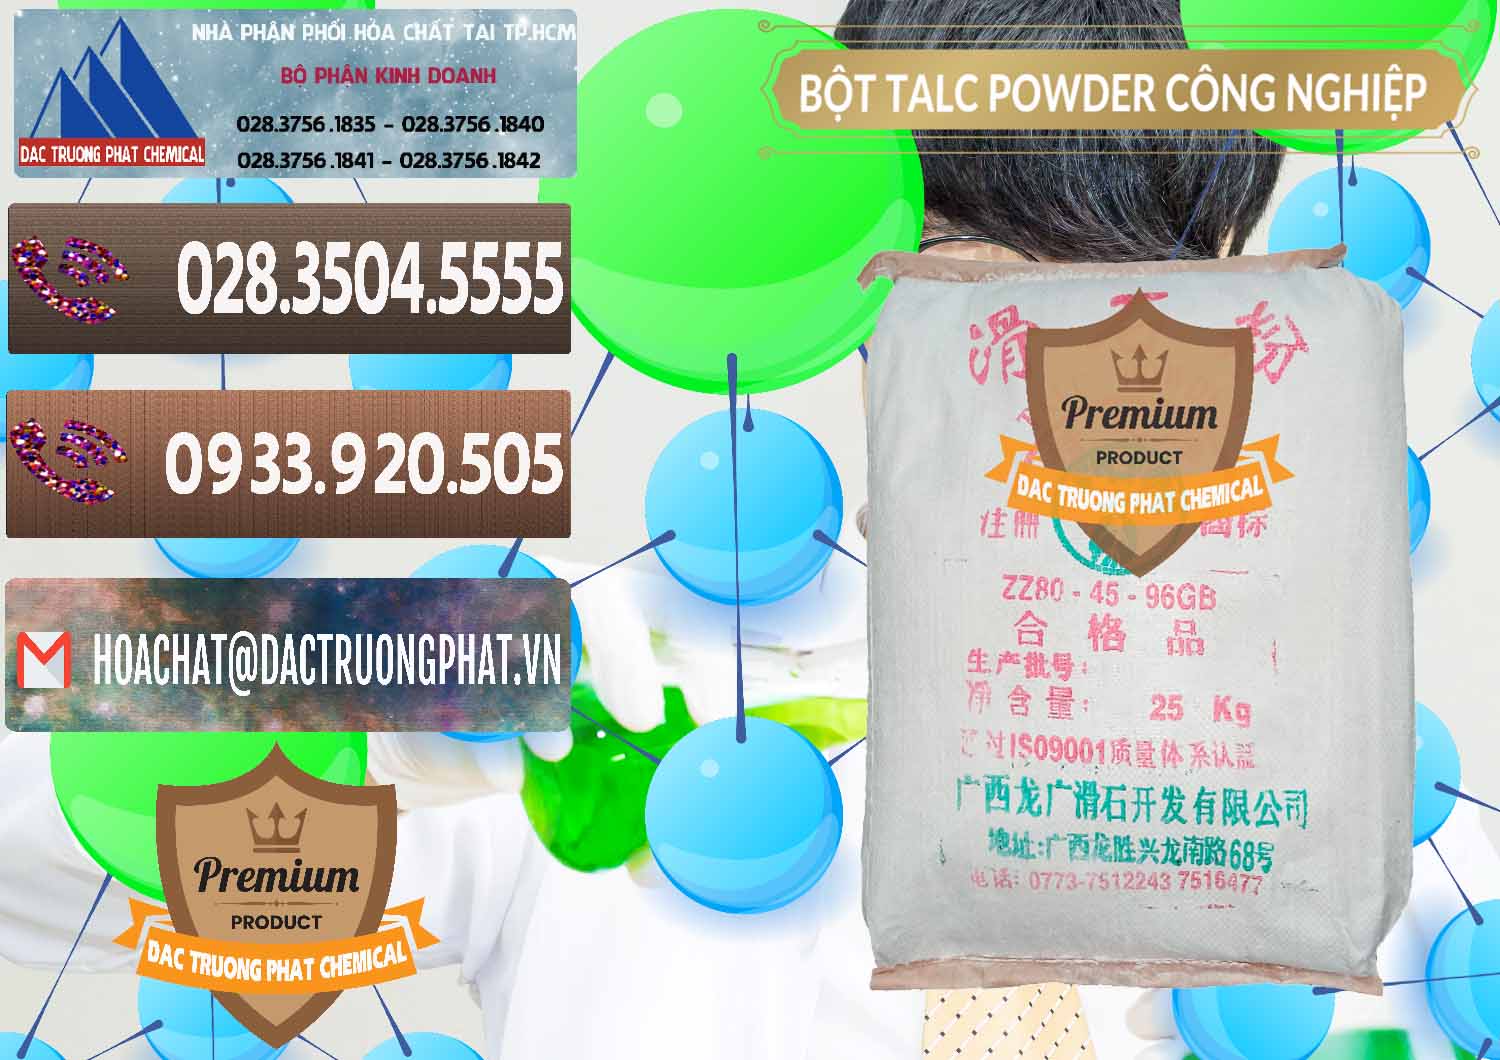 Chuyên cung cấp và bán Bột Talc Powder Công Nghiệp Trung Quốc China - 0037 - Phân phối - cung cấp hóa chất tại TP.HCM - hoachatviet.net